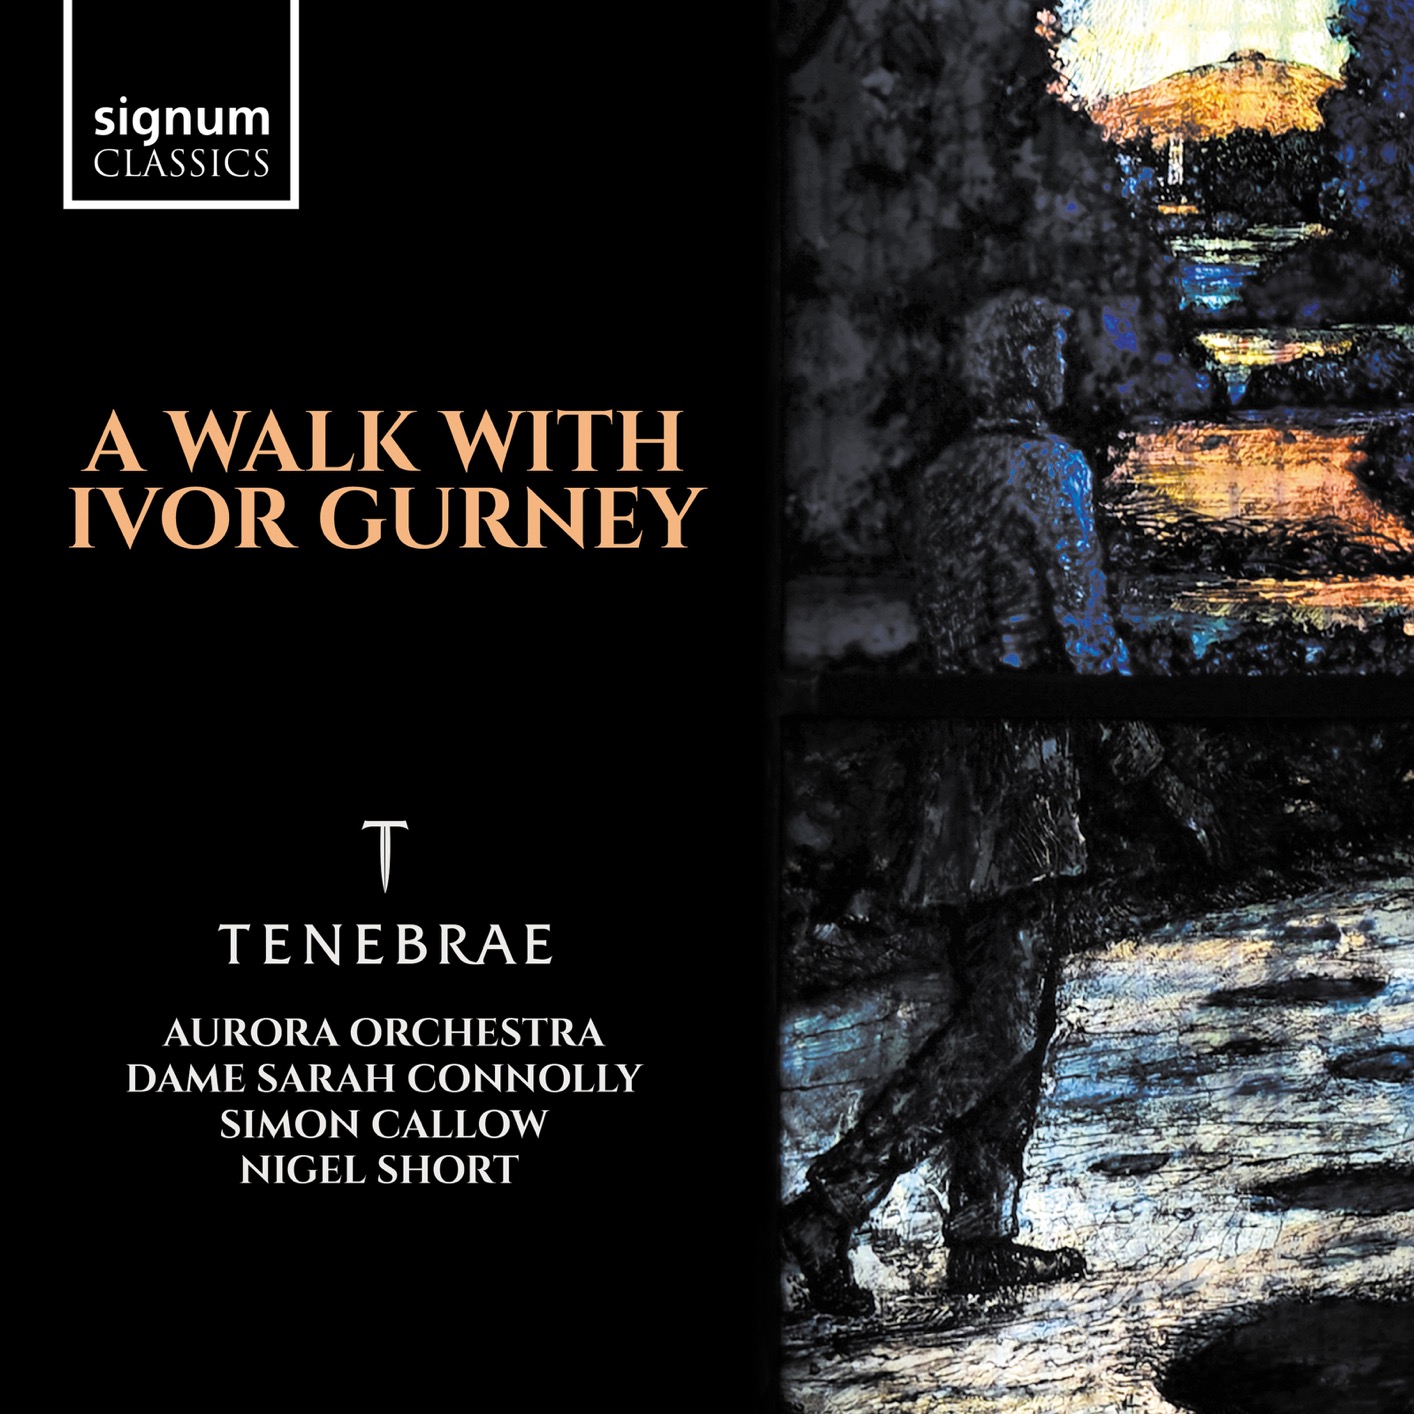 Tenebrae & Nigel Short - A Walk with Ivor Gurney (2018) [FLAC 24bit/96kHz]